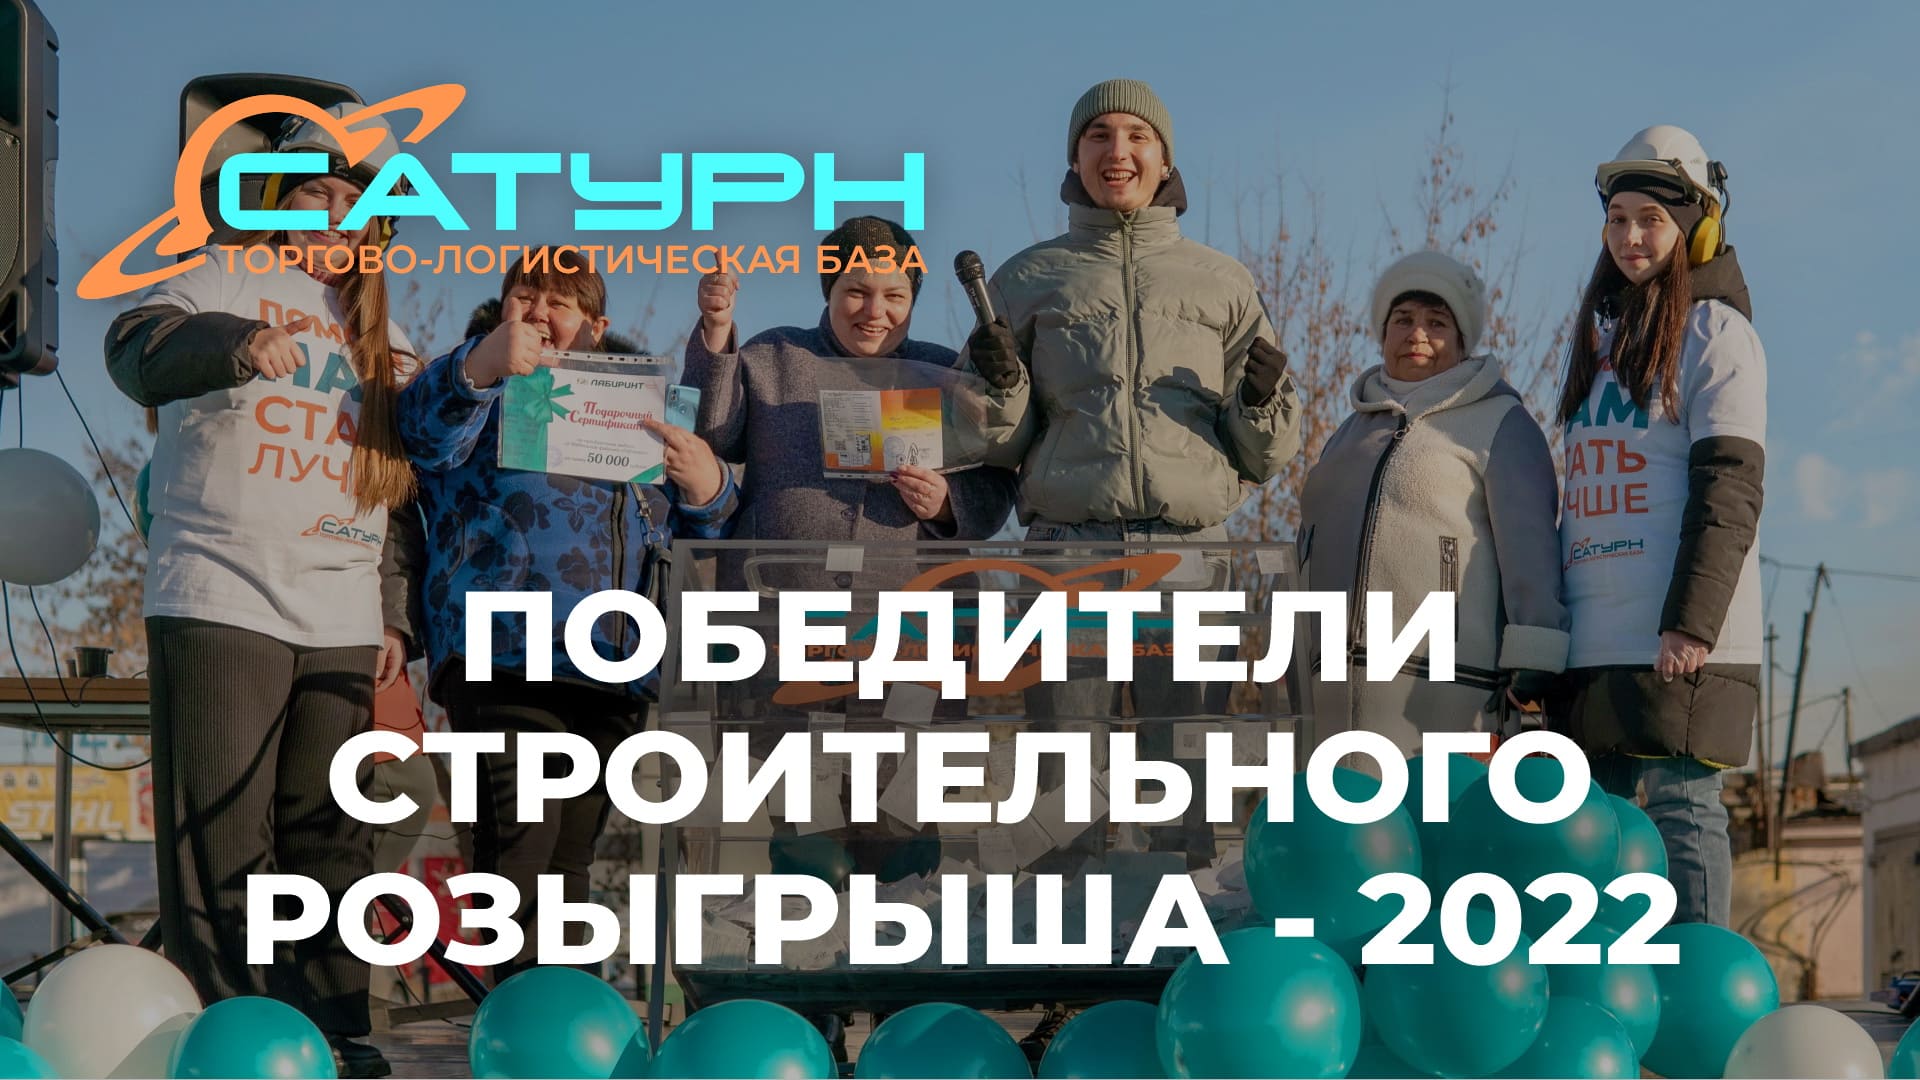 Строительный розыгрыш-2022 на базе Сатурн в Ангарске 03 ноября 2022 года (призовой фонд 270000 руб.)